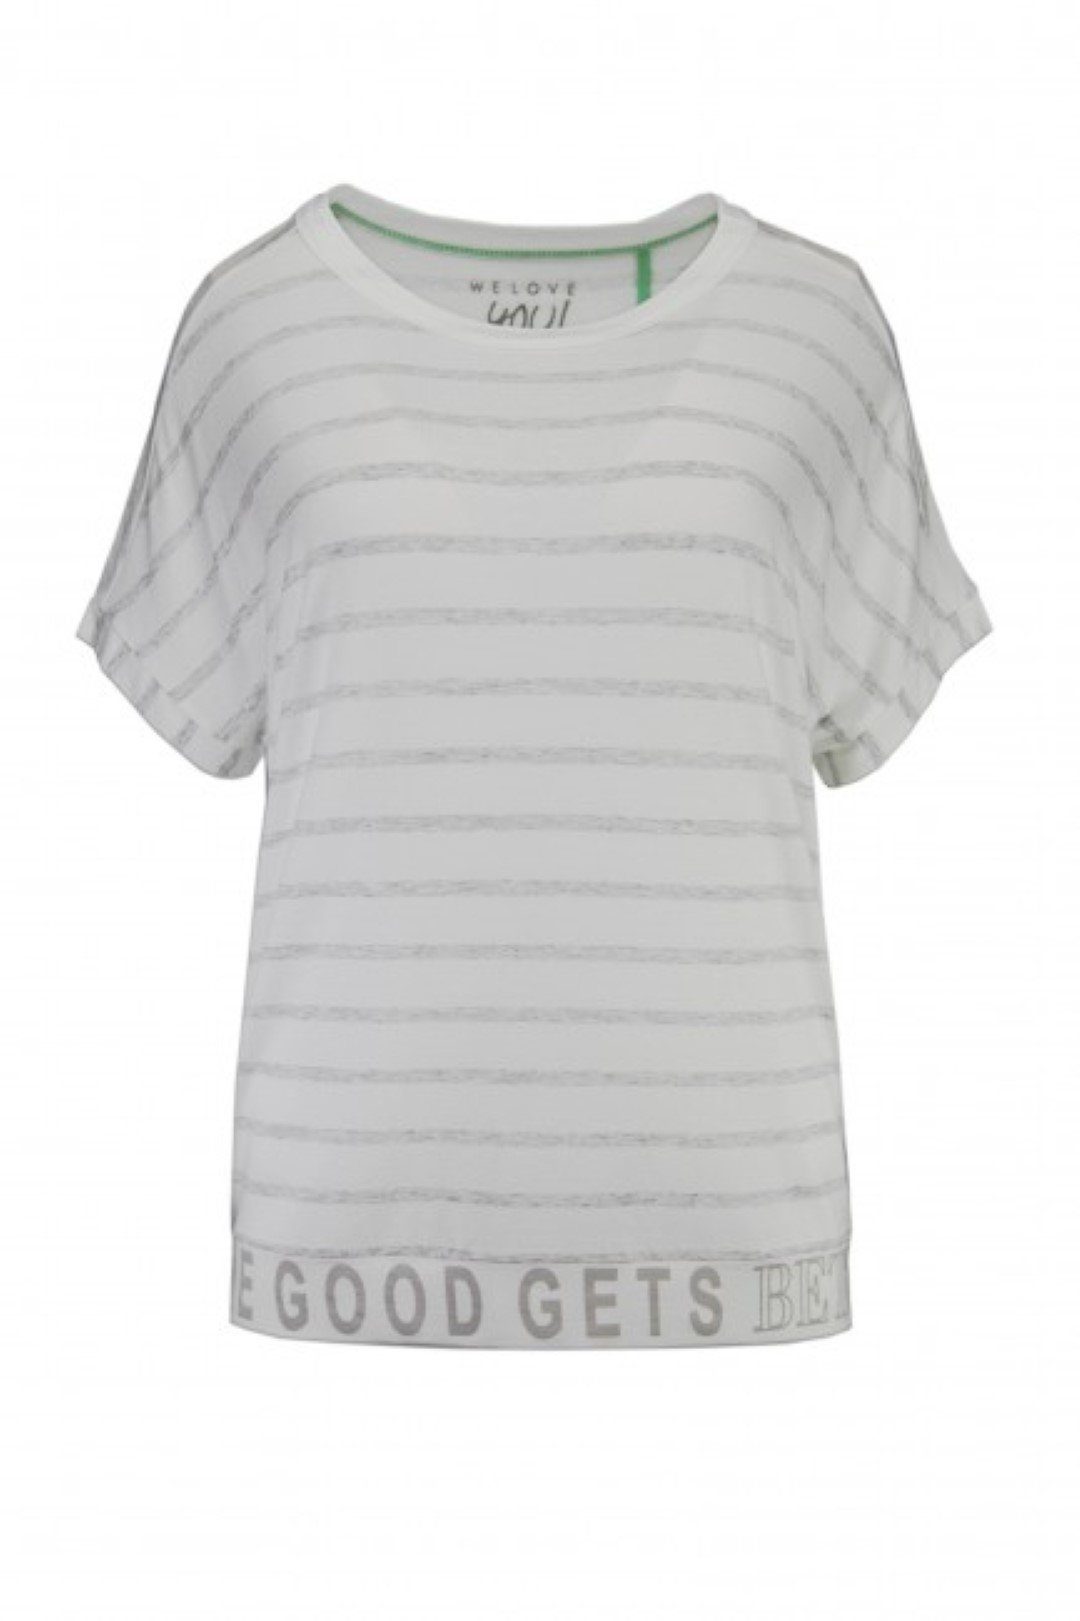 Damenmode, kurzarm Ausschnitt - überschnitten, gestreift, Trade, Fair Shirt weiß-grau XOX XOX T-Shirt U-Boot T-Shirt